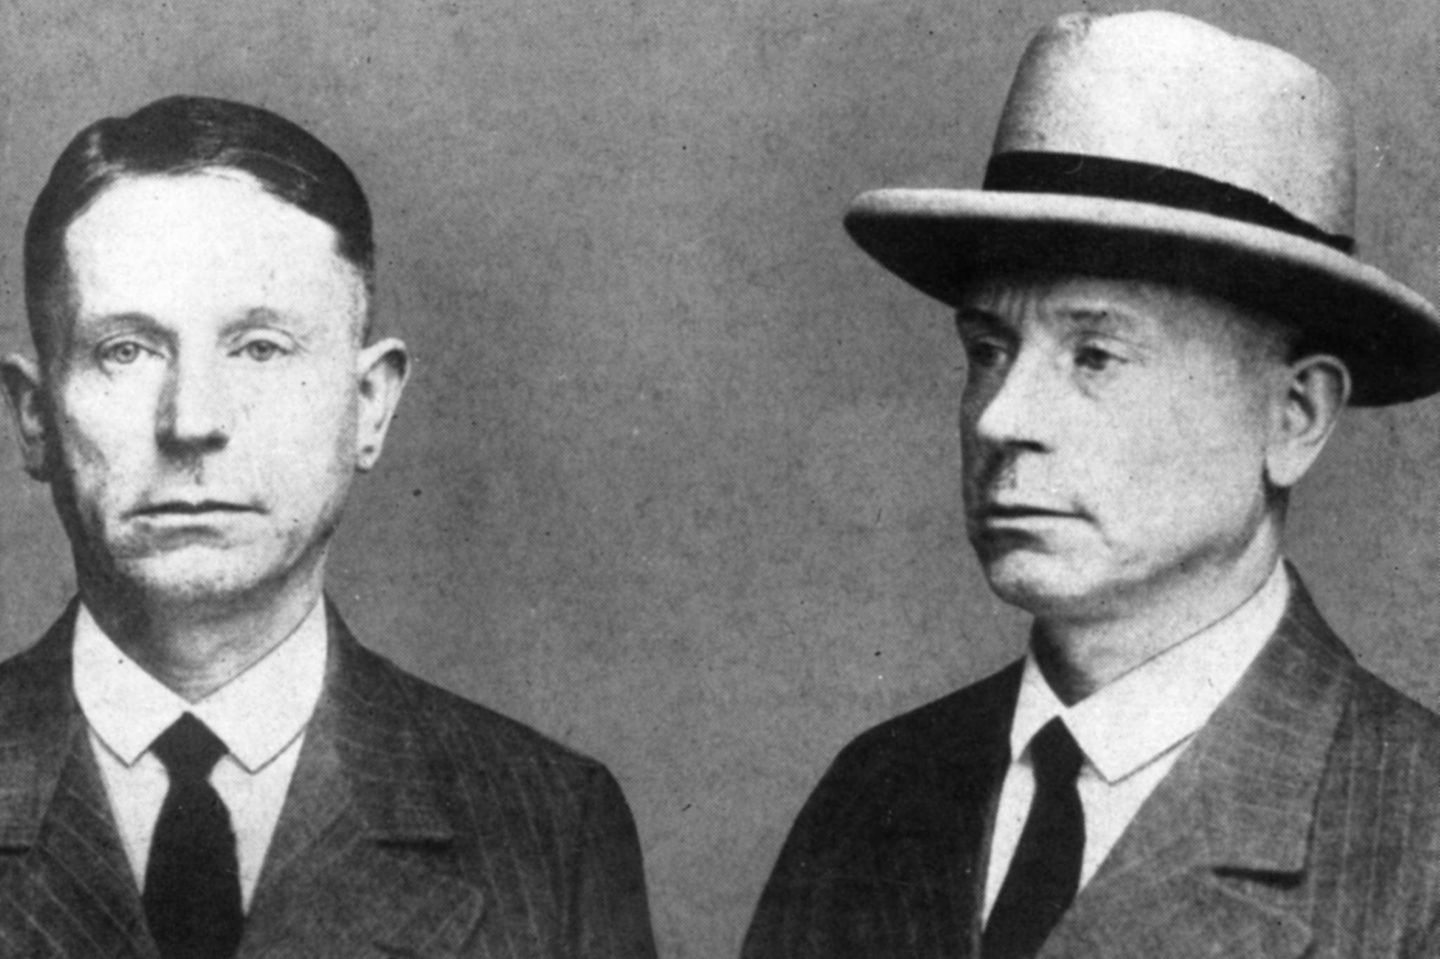 Der "Vampir von Düsseldorf": Peter Kürten (1881-1931) hat mindestens neun Menschen umgebracht